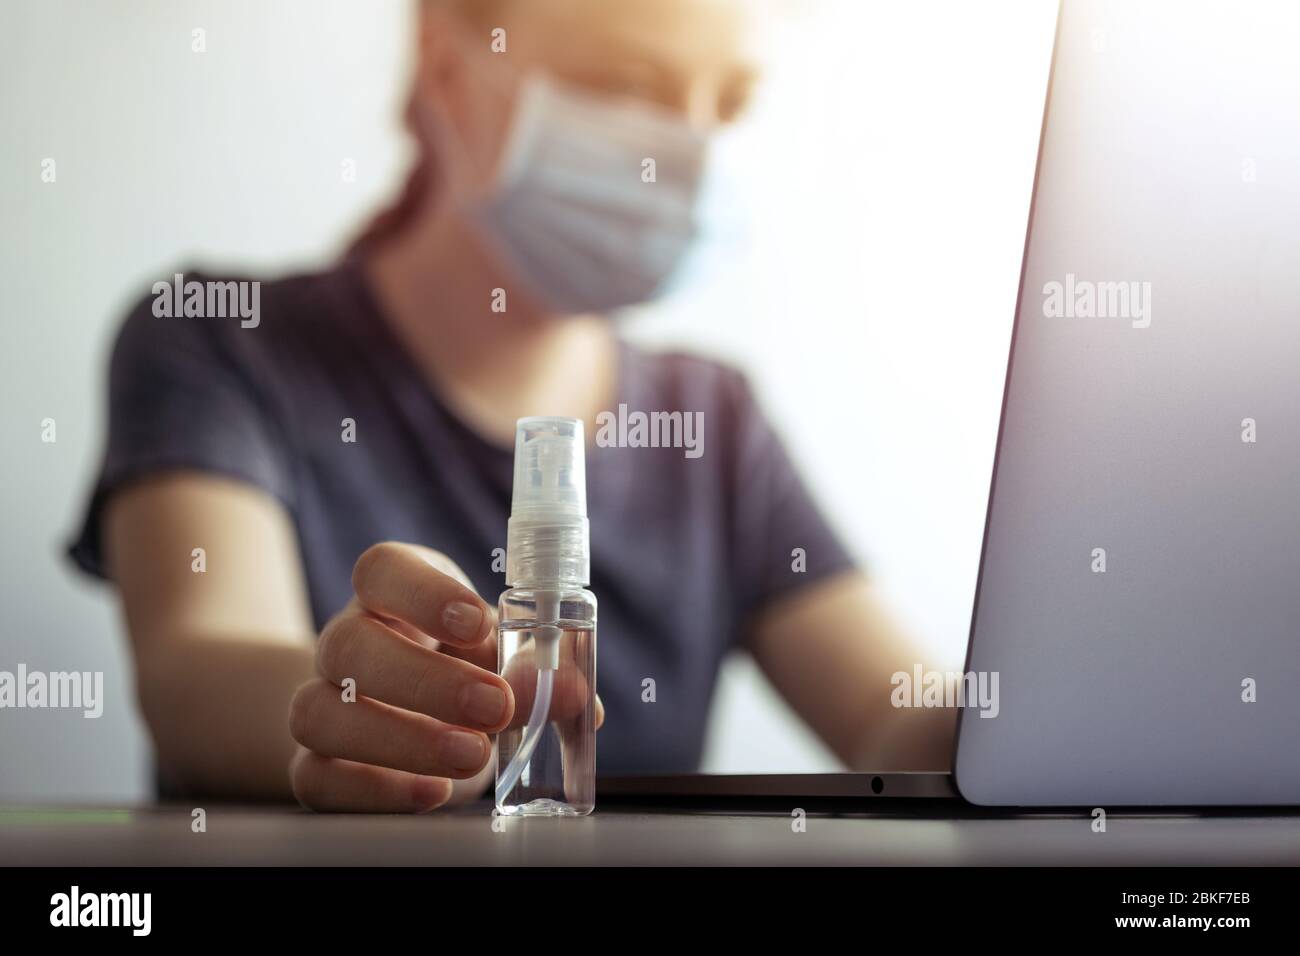 Femme au masque et à la main avec un flacon d'alcool désinfectant près d'un ordinateur portable. Prévention du coronavirus covid-19 en milieu de travail ou à domicile pendant la quarantaine Banque D'Images